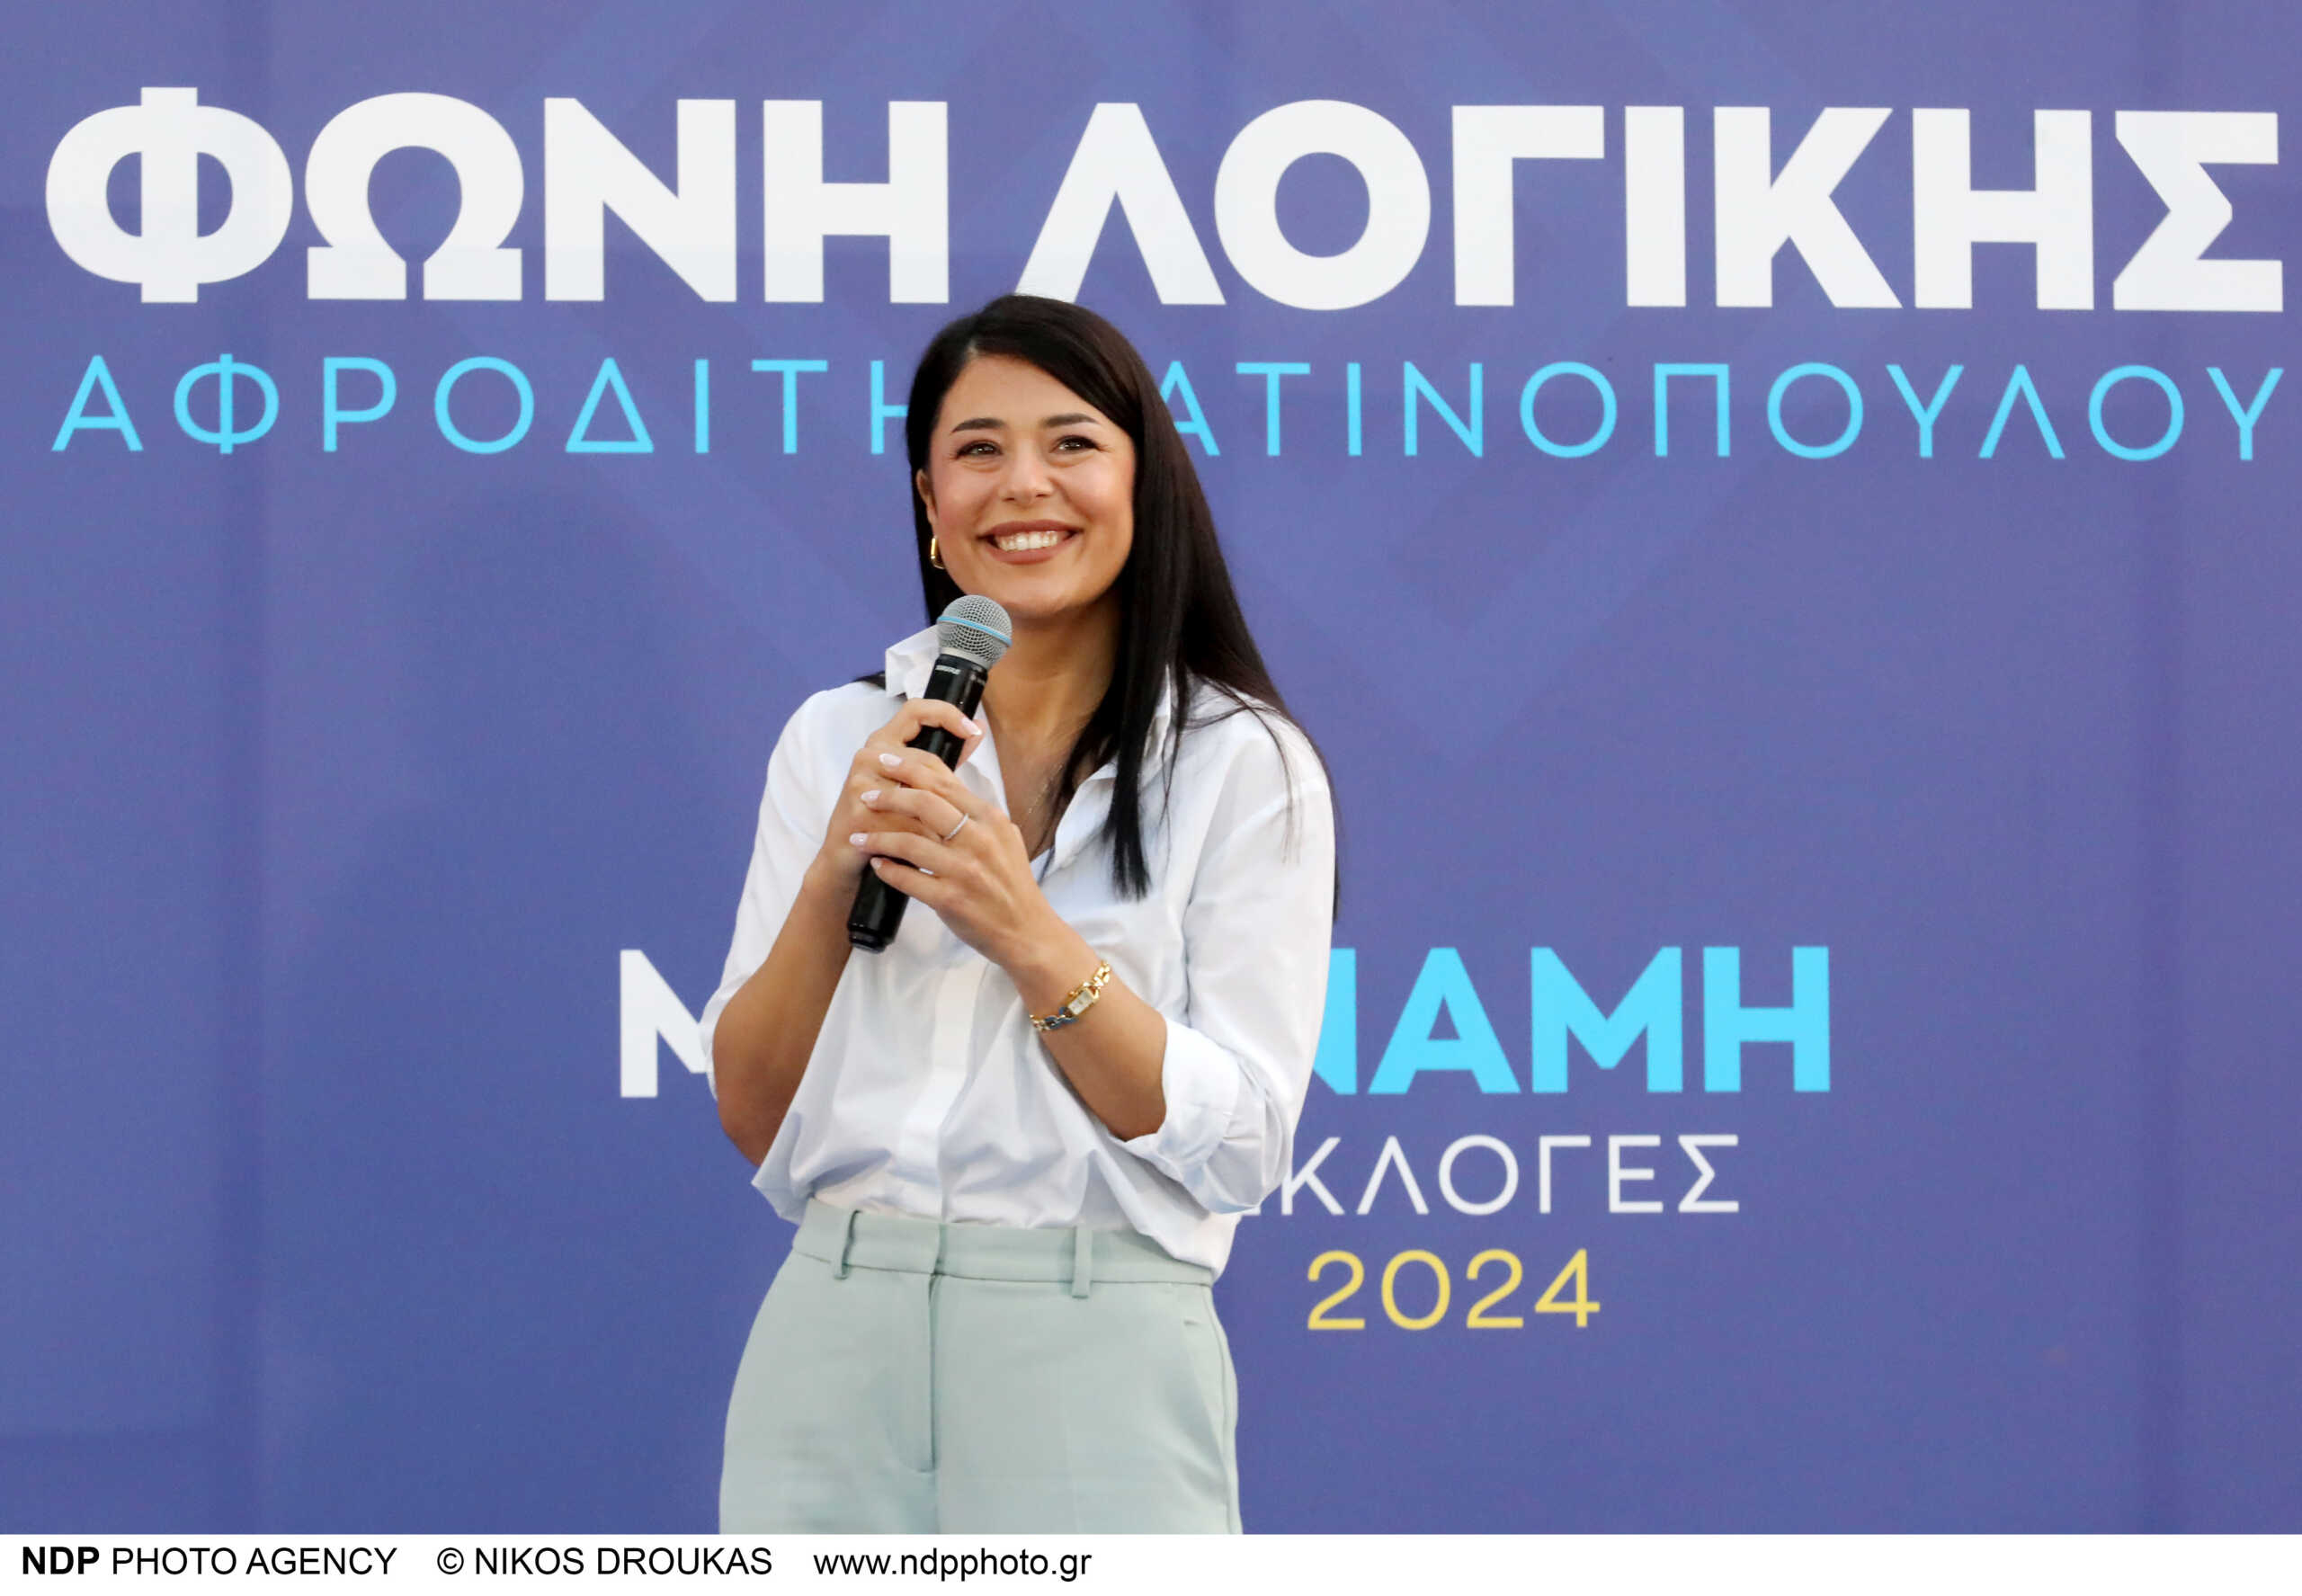 Ευρωεκλογές 2024 – Αφροδίτη Λατινοπούλου: Είμαι ευτυχισμένη που από σήμερα θα γνωρίζουν τη «Φωνή Λογικής»